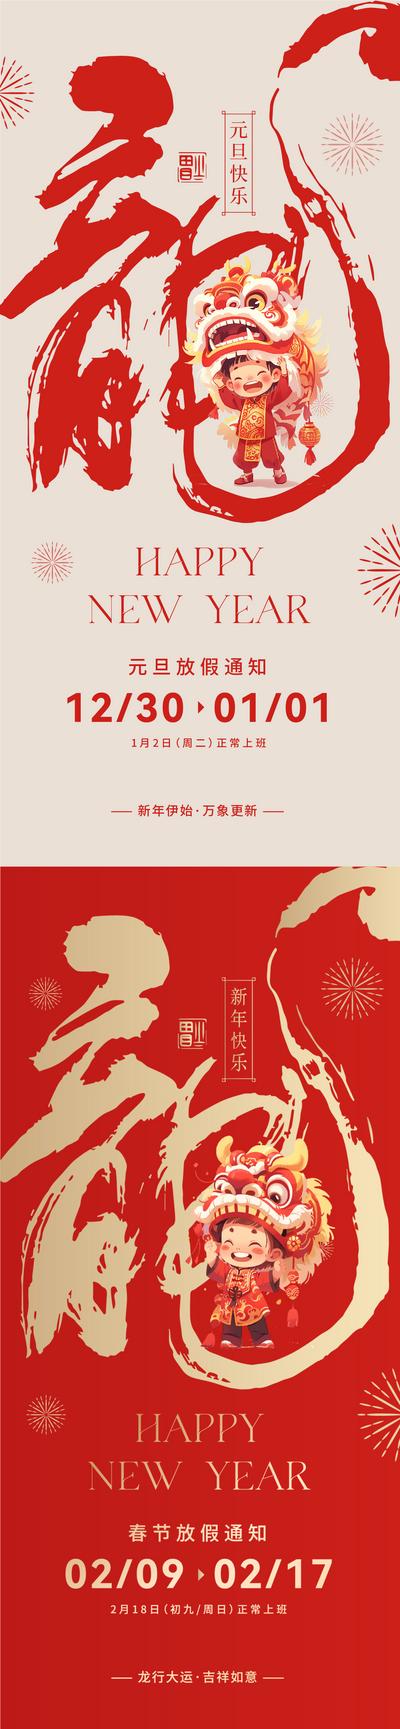 南门网 海报 中国传统节日 元旦 放假通知 舞狮 毛笔字